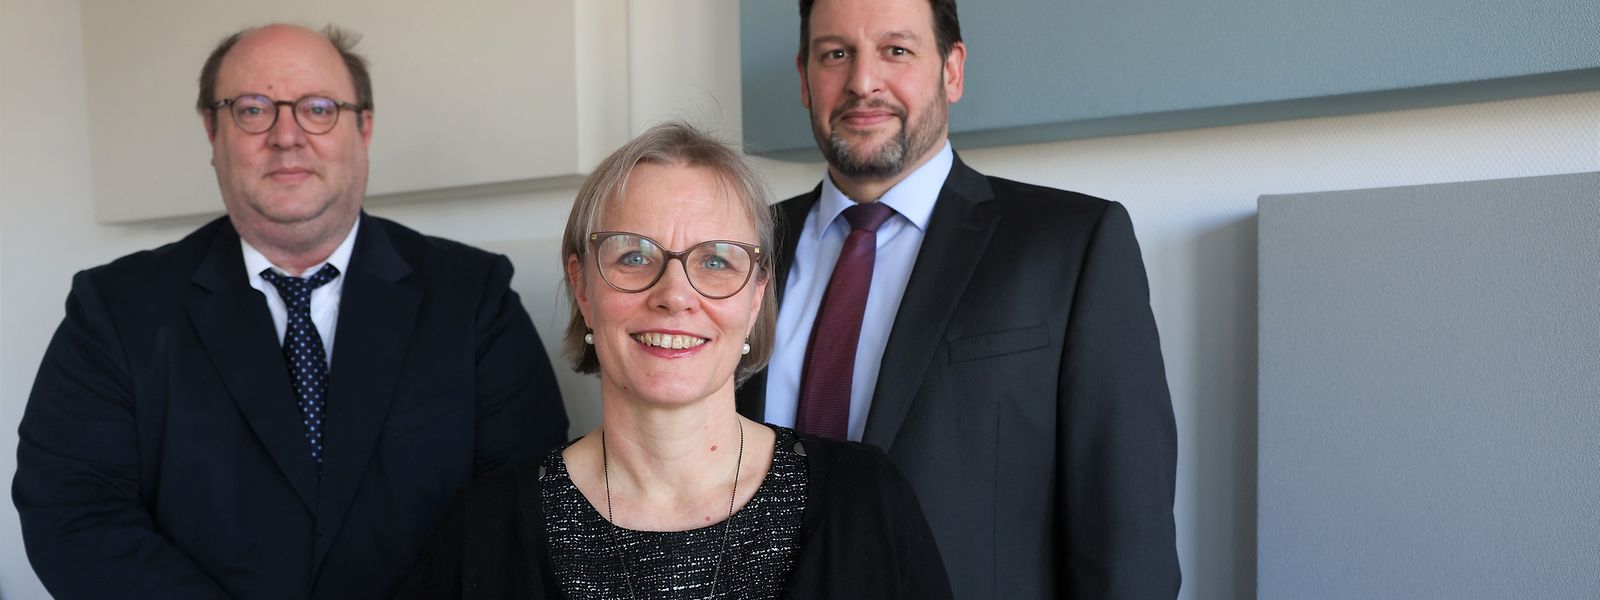 Matthias Müller, Risikomanagement, Sofia Harrschar, Country Head Luxembourg, und Martin Groos, Recht, (v.l.) bilden das Management-Team von Universal-Investment Luxembourg (UIL).